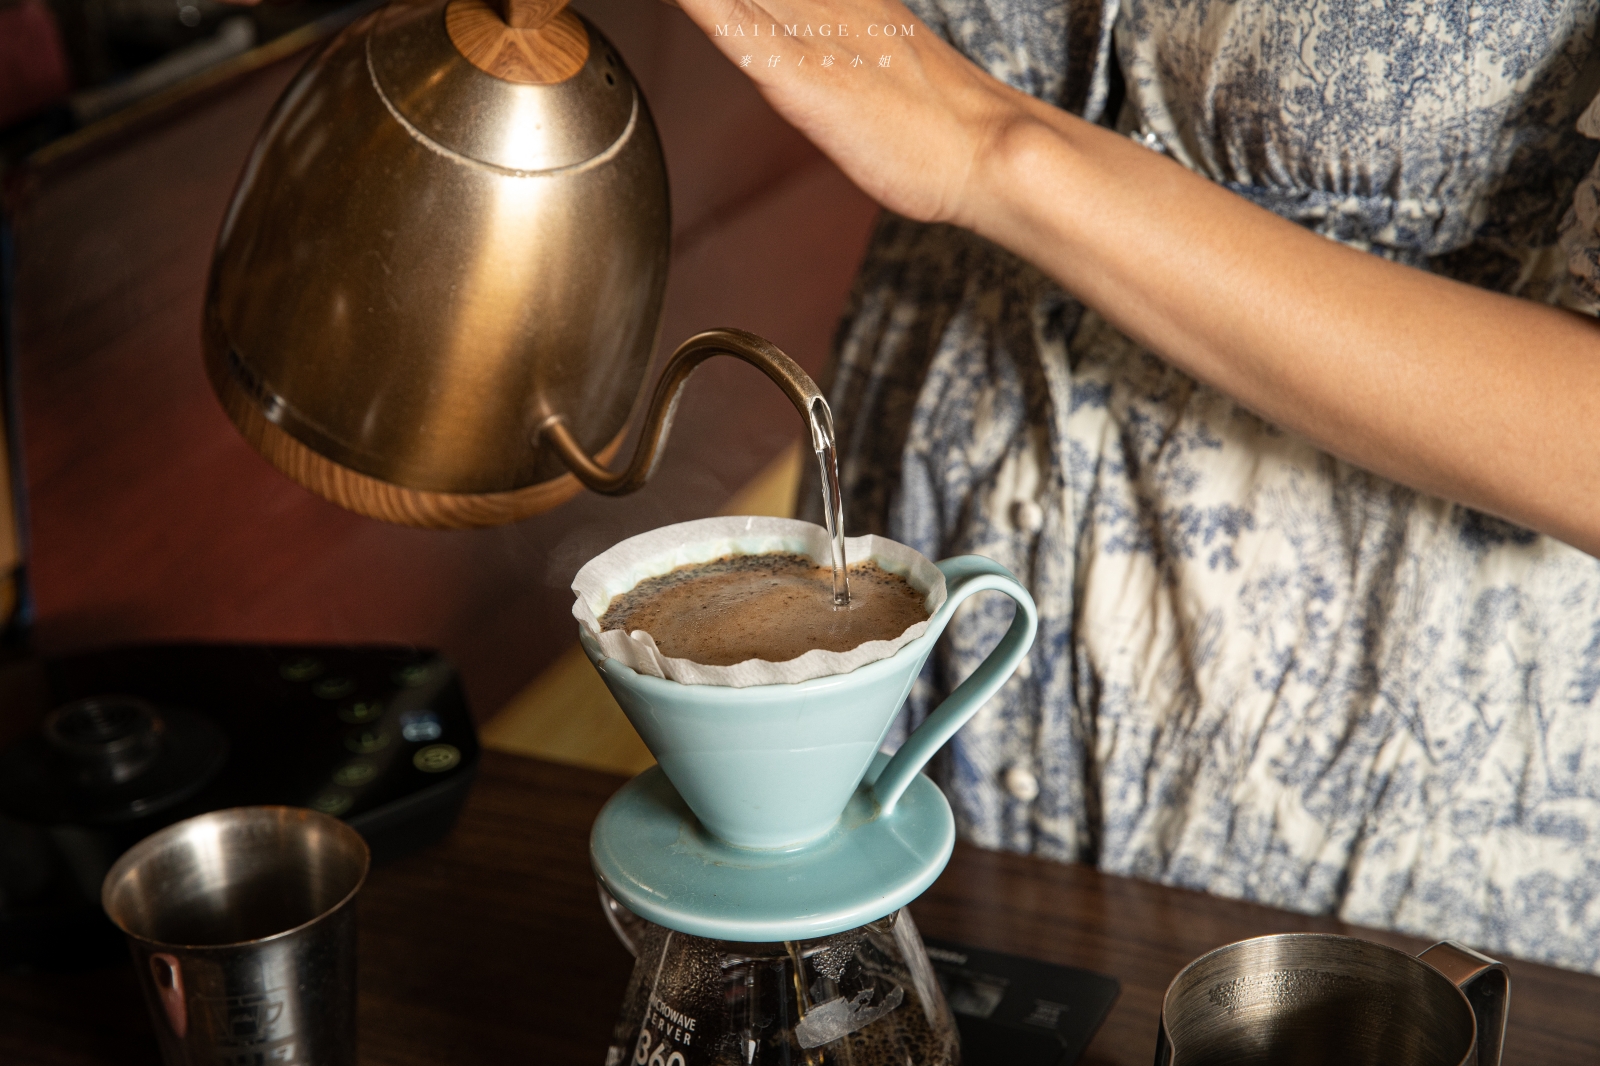 『2021 TSCA日日金杯』野夫咖啡、烘焙者咖啡、閃咖啡、赫米斯咖啡、歐克法咖啡。限時店家聯合優惠～88折起！文末有抽獎活動喔